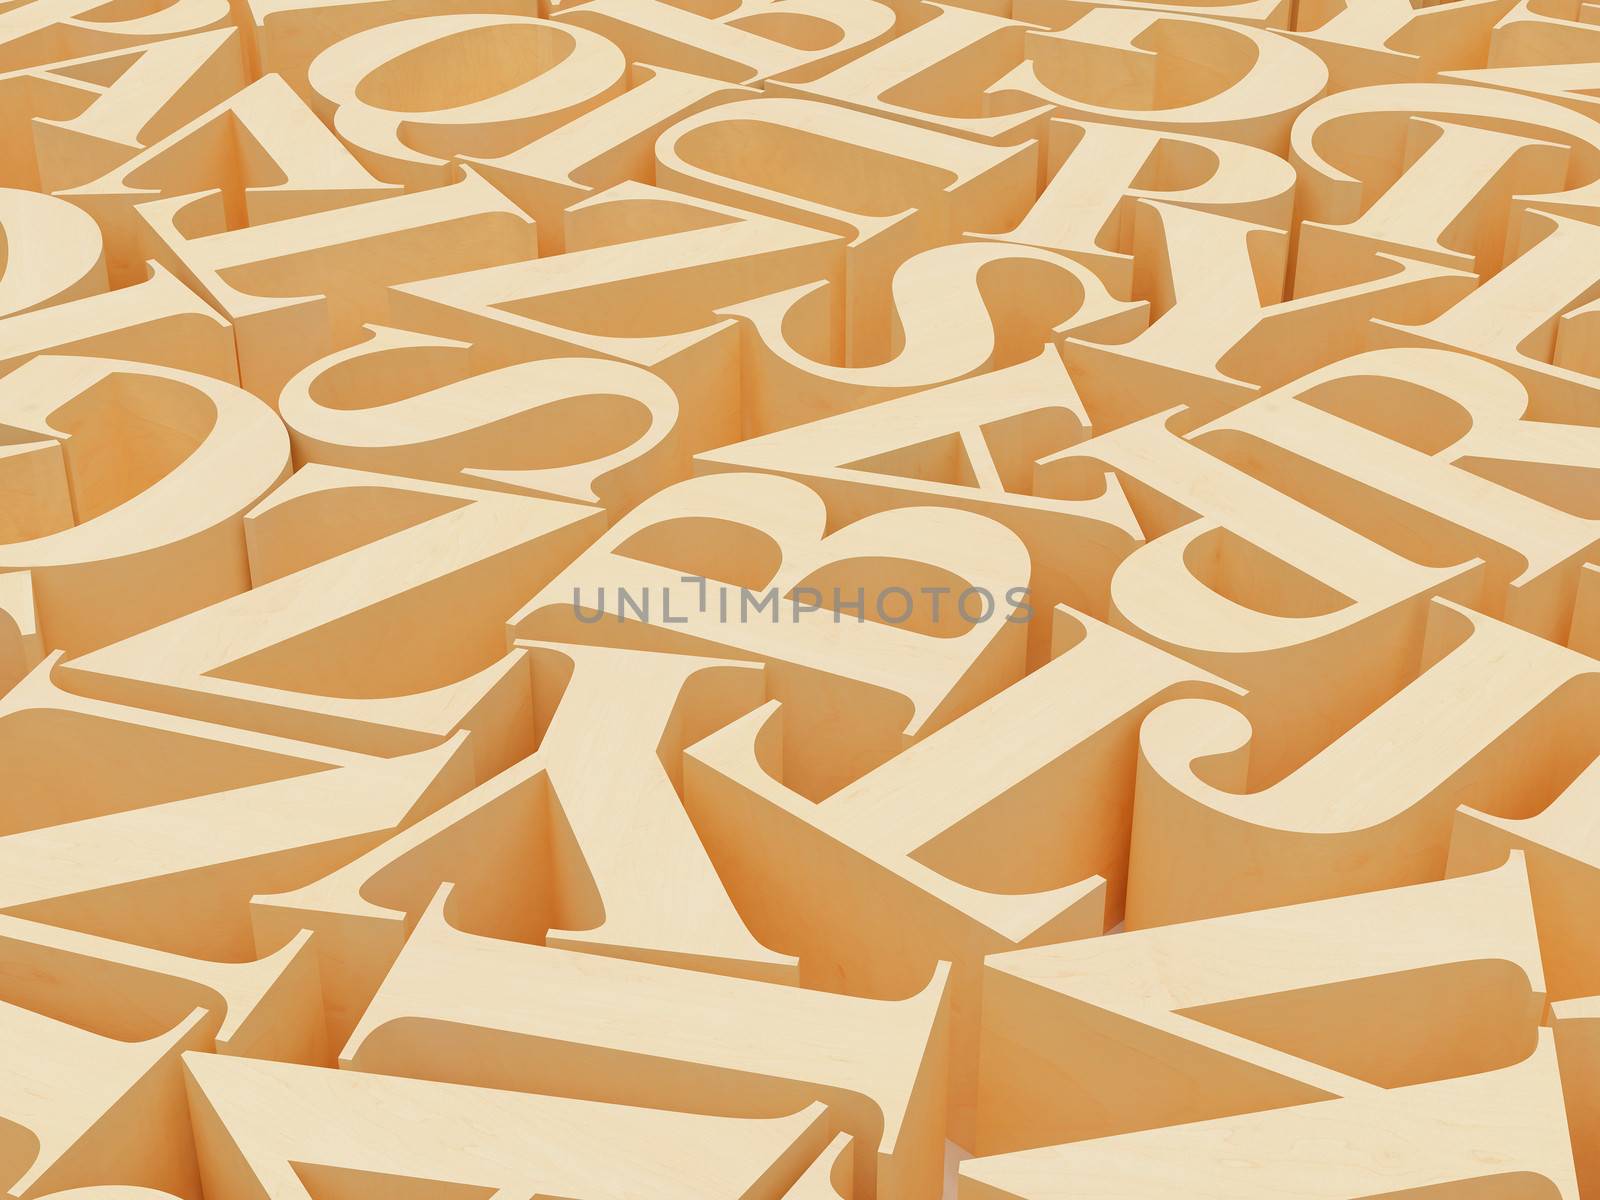 High resolution image. 3d rendered illustration. Background of alphabets.